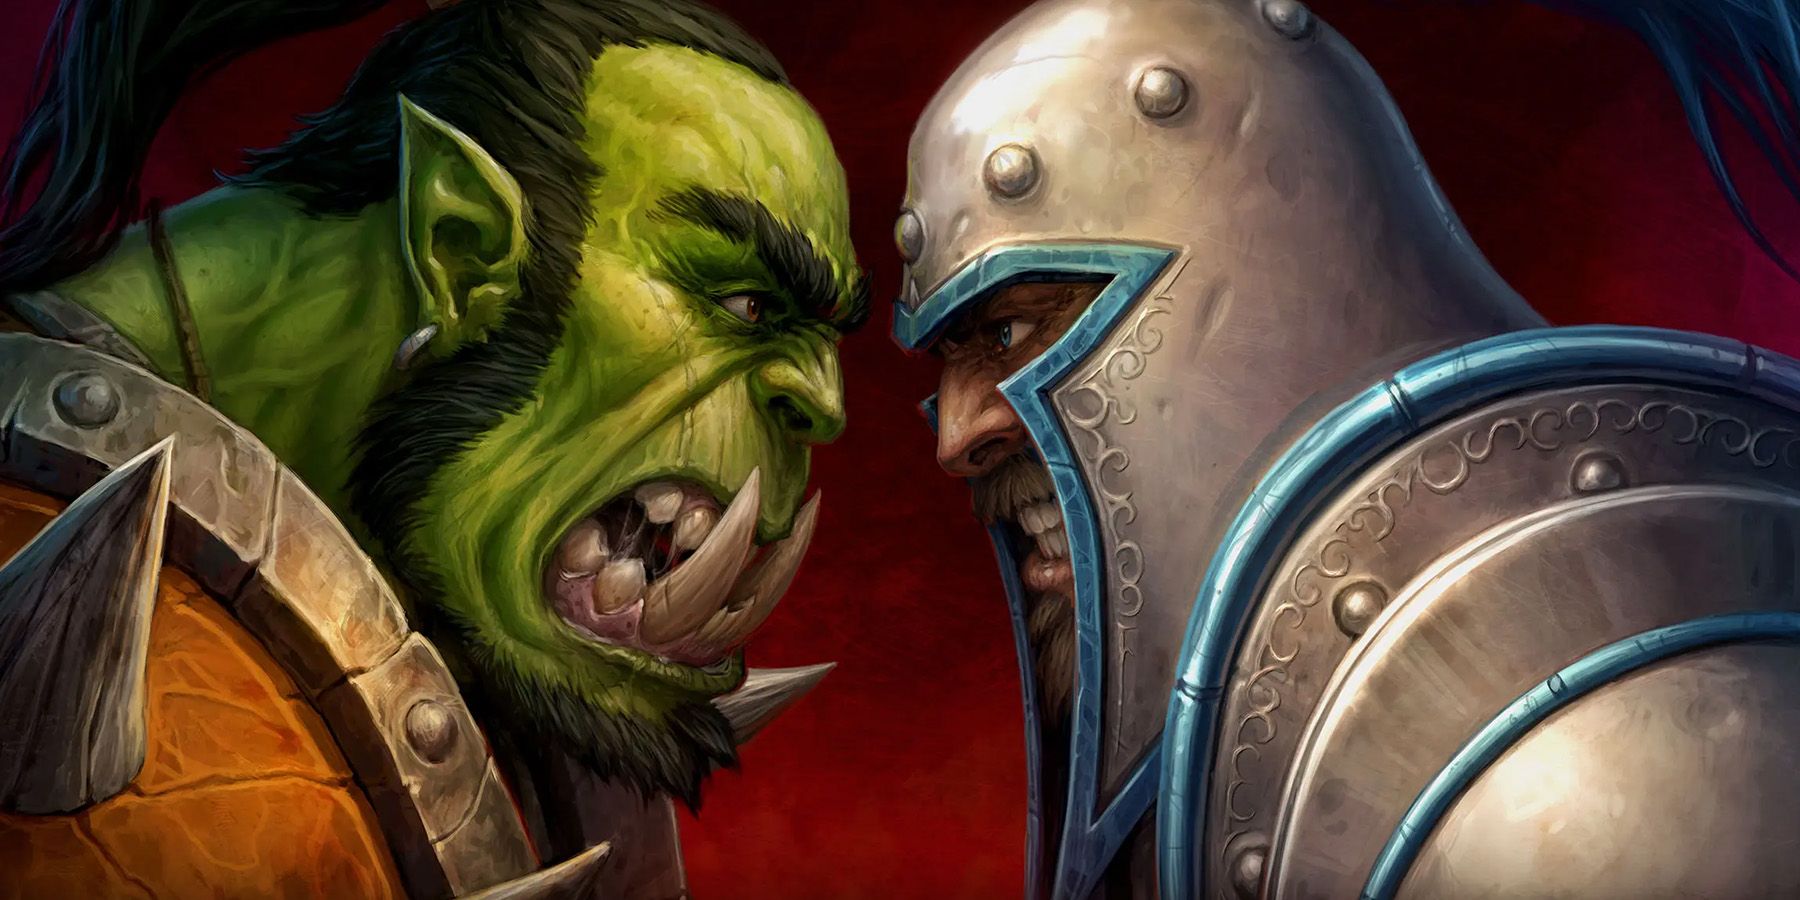 Warcraft RTS